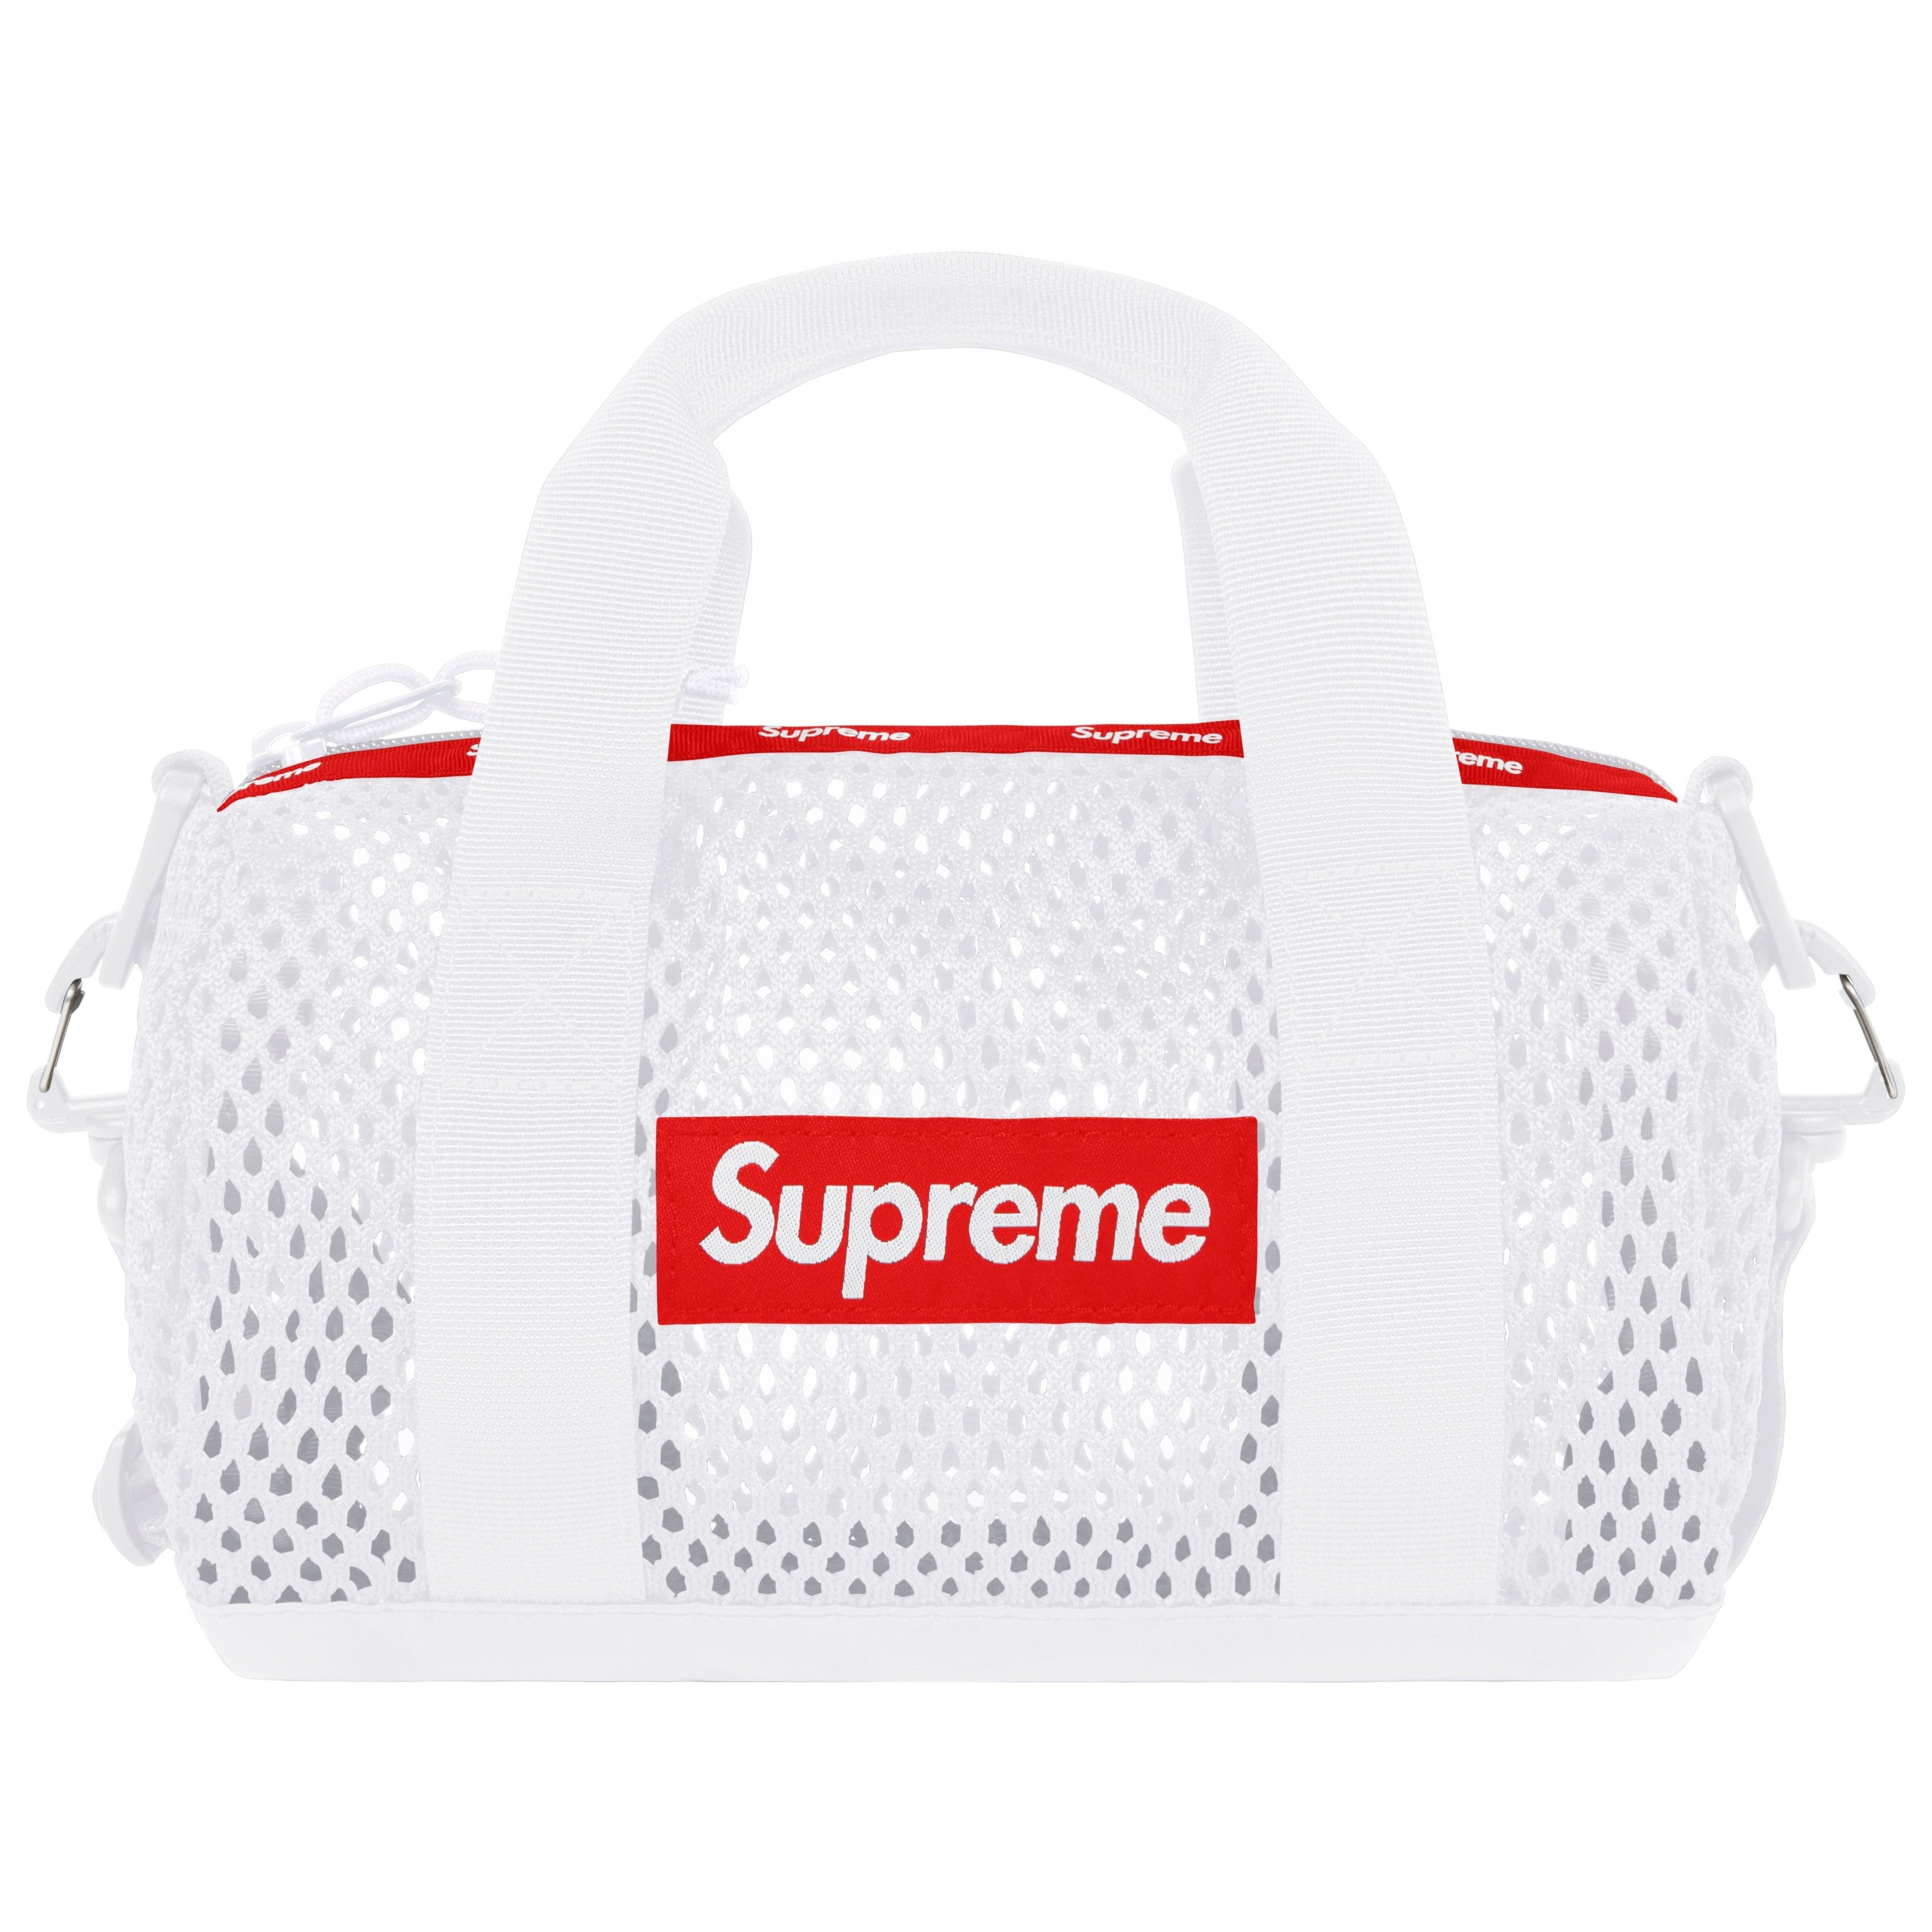 Supreme Bags | Backpacks| Tote Bags | Waist Bags - WEAR43WAY